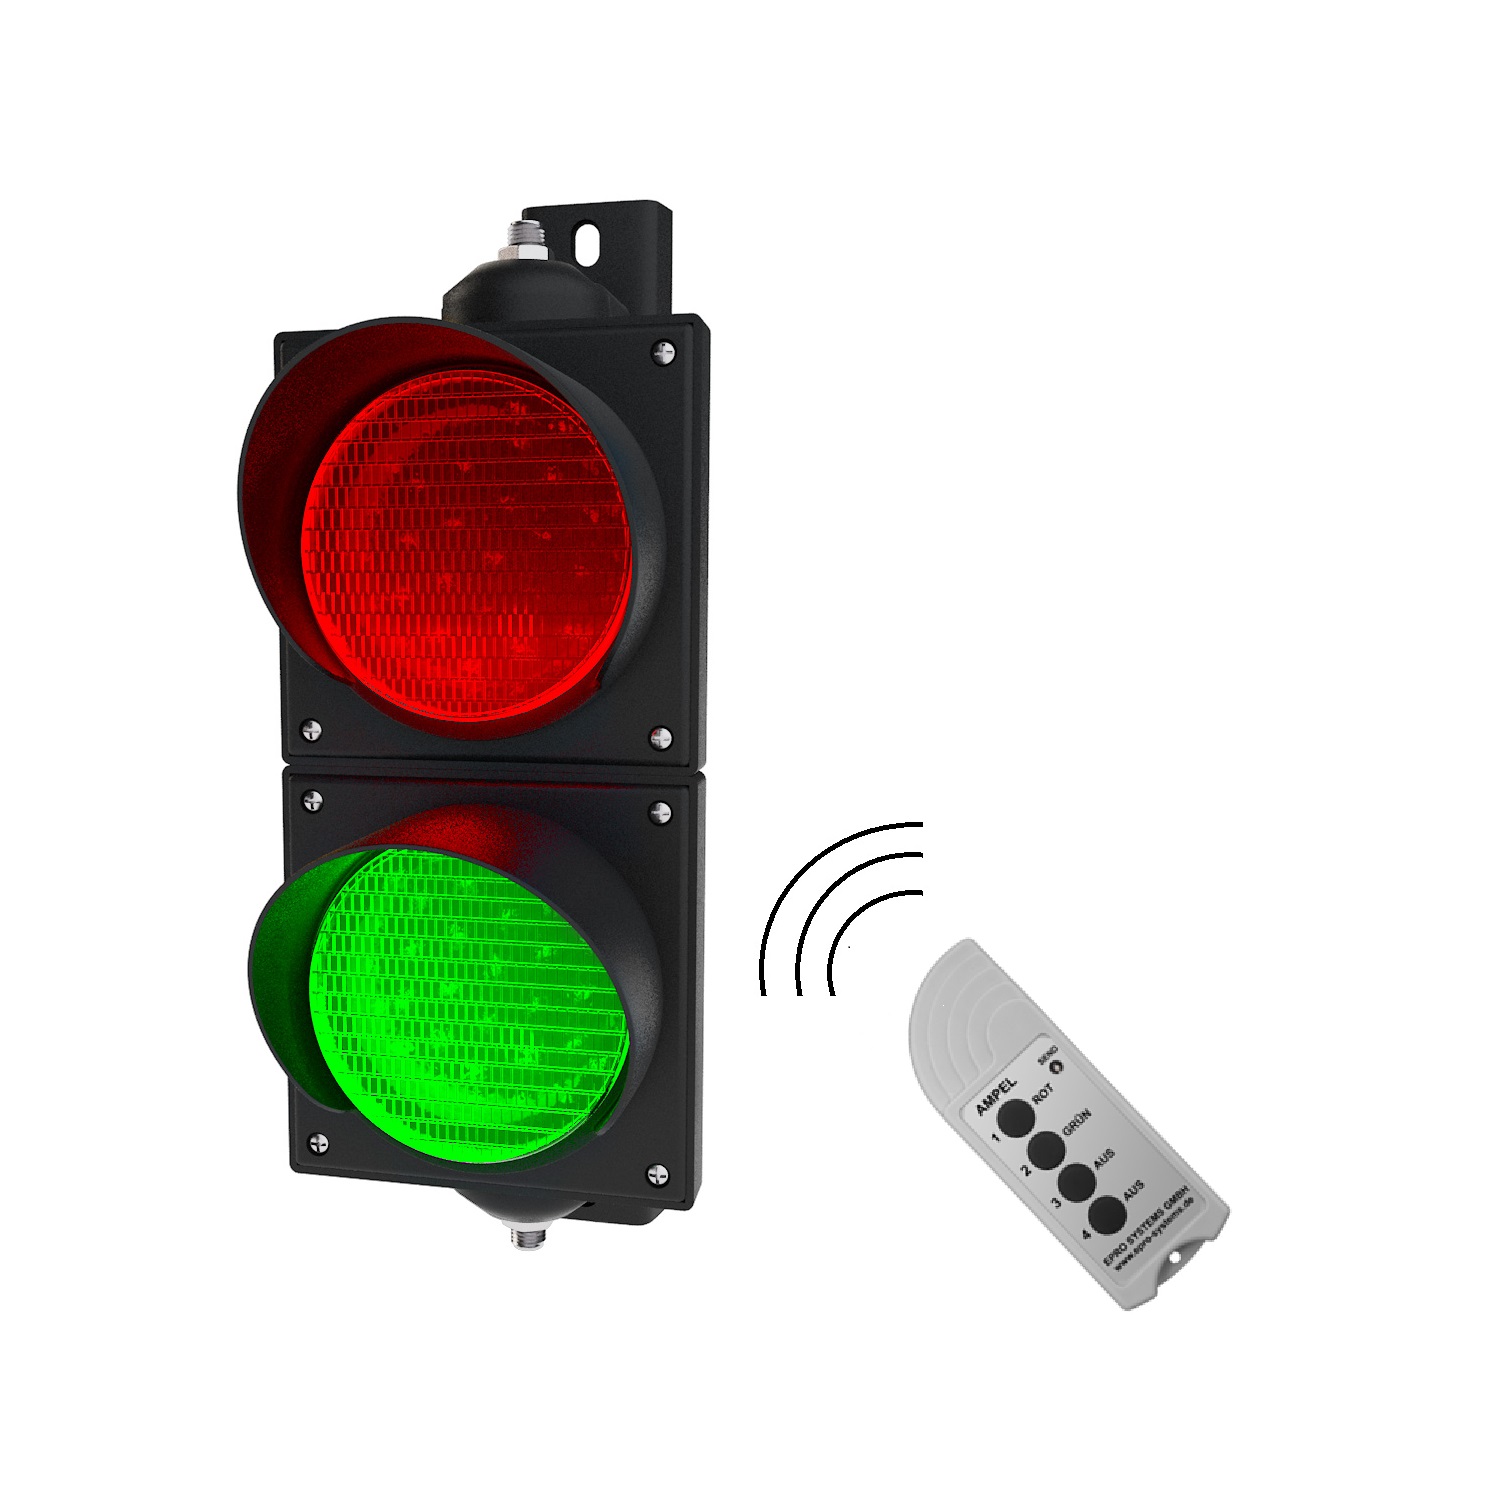 Ampel PC Gehäuse Wasserdicht IP65 Industrielle LED-Verkehrsbremsleuchte Ampel Licht Rot/Grün Stop and Go-Licht LED-Ampel-Lampe mit Fernbedienung 